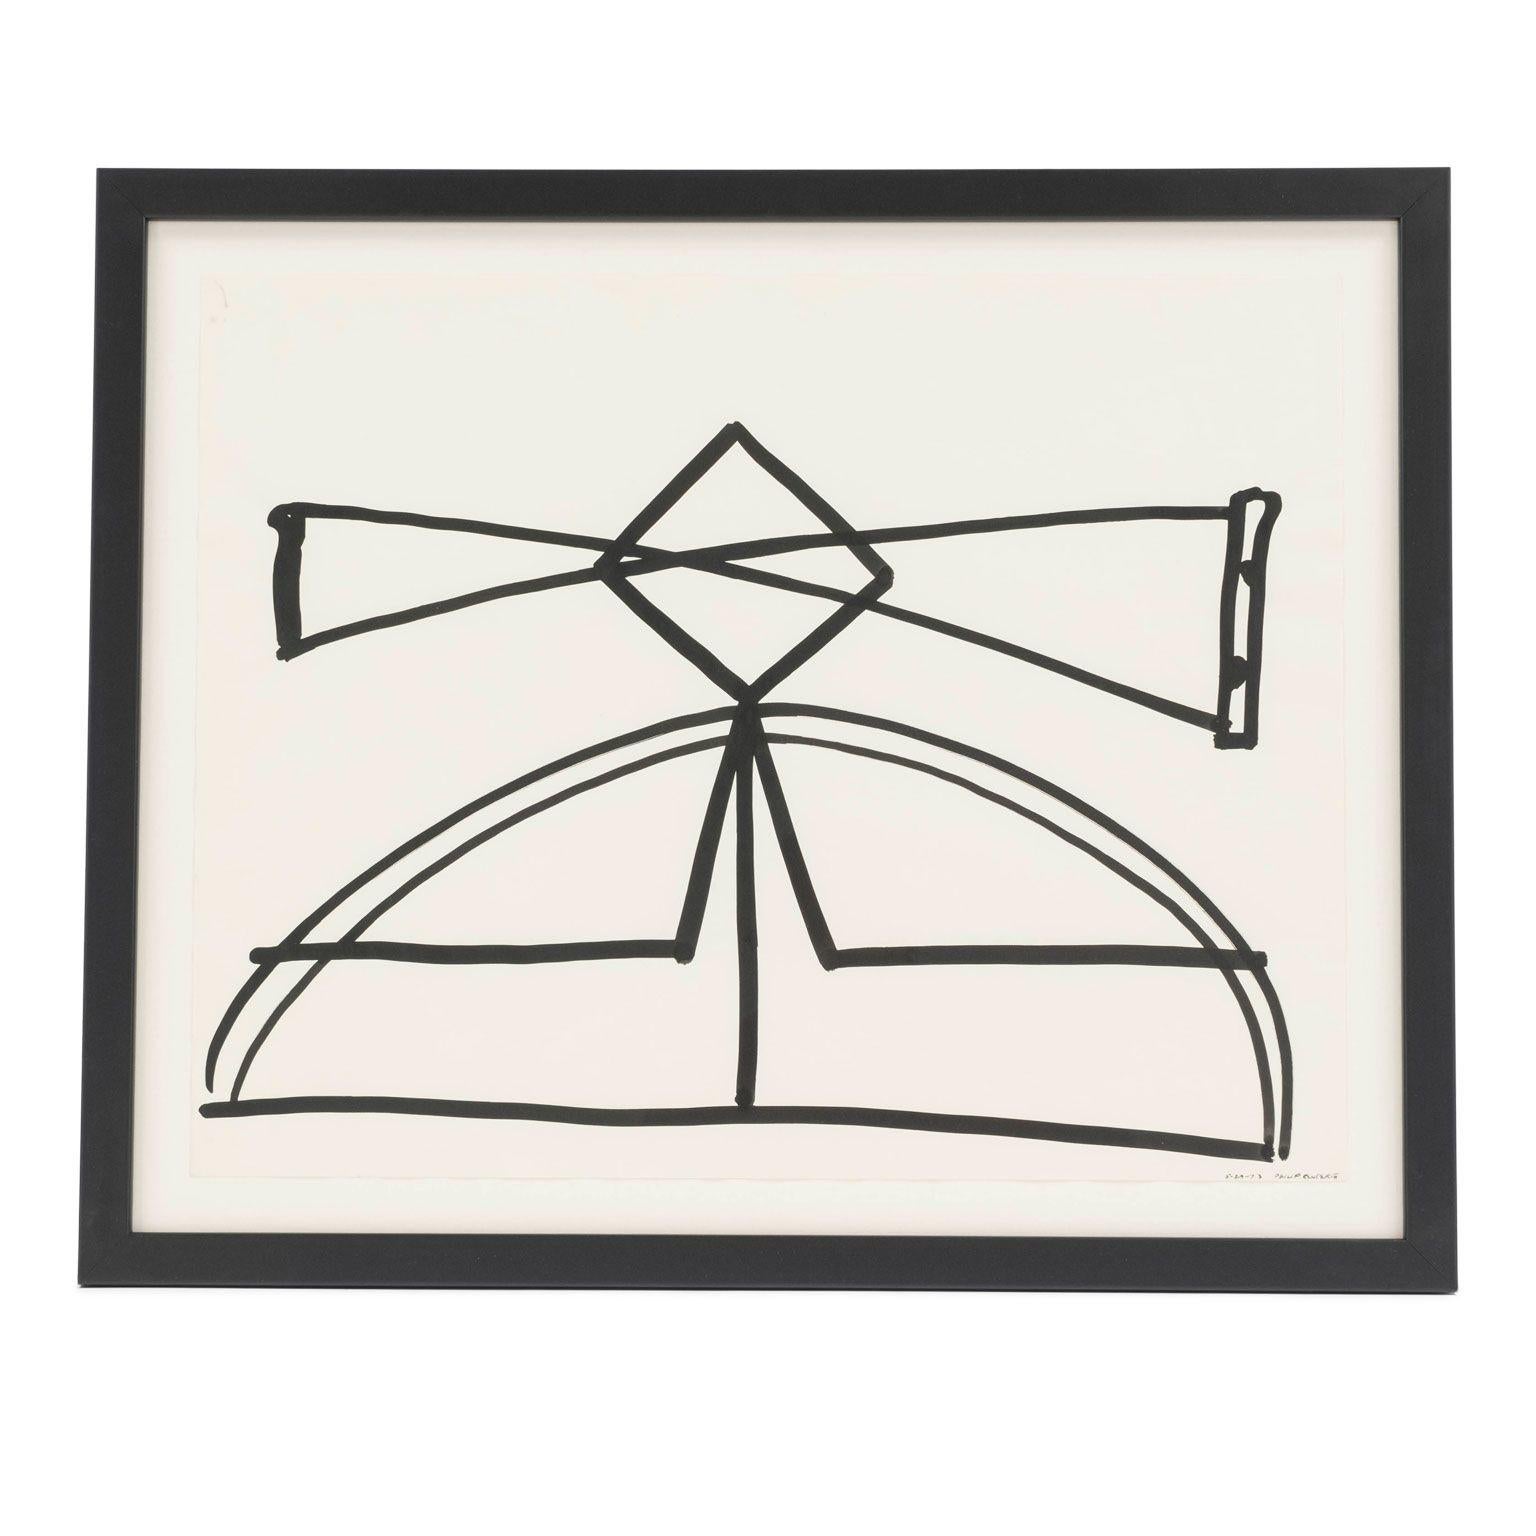 Abstraction minimaliste en noir et blanc à l'encre sur papier de Philip Renteria (1947-1998), 1973. Pinceau et encre sur papier sans titre, tous deux datés et l'un d'eux signé à la main par l'artiste. Nouvellement encadrée, montée sur flotteur dans